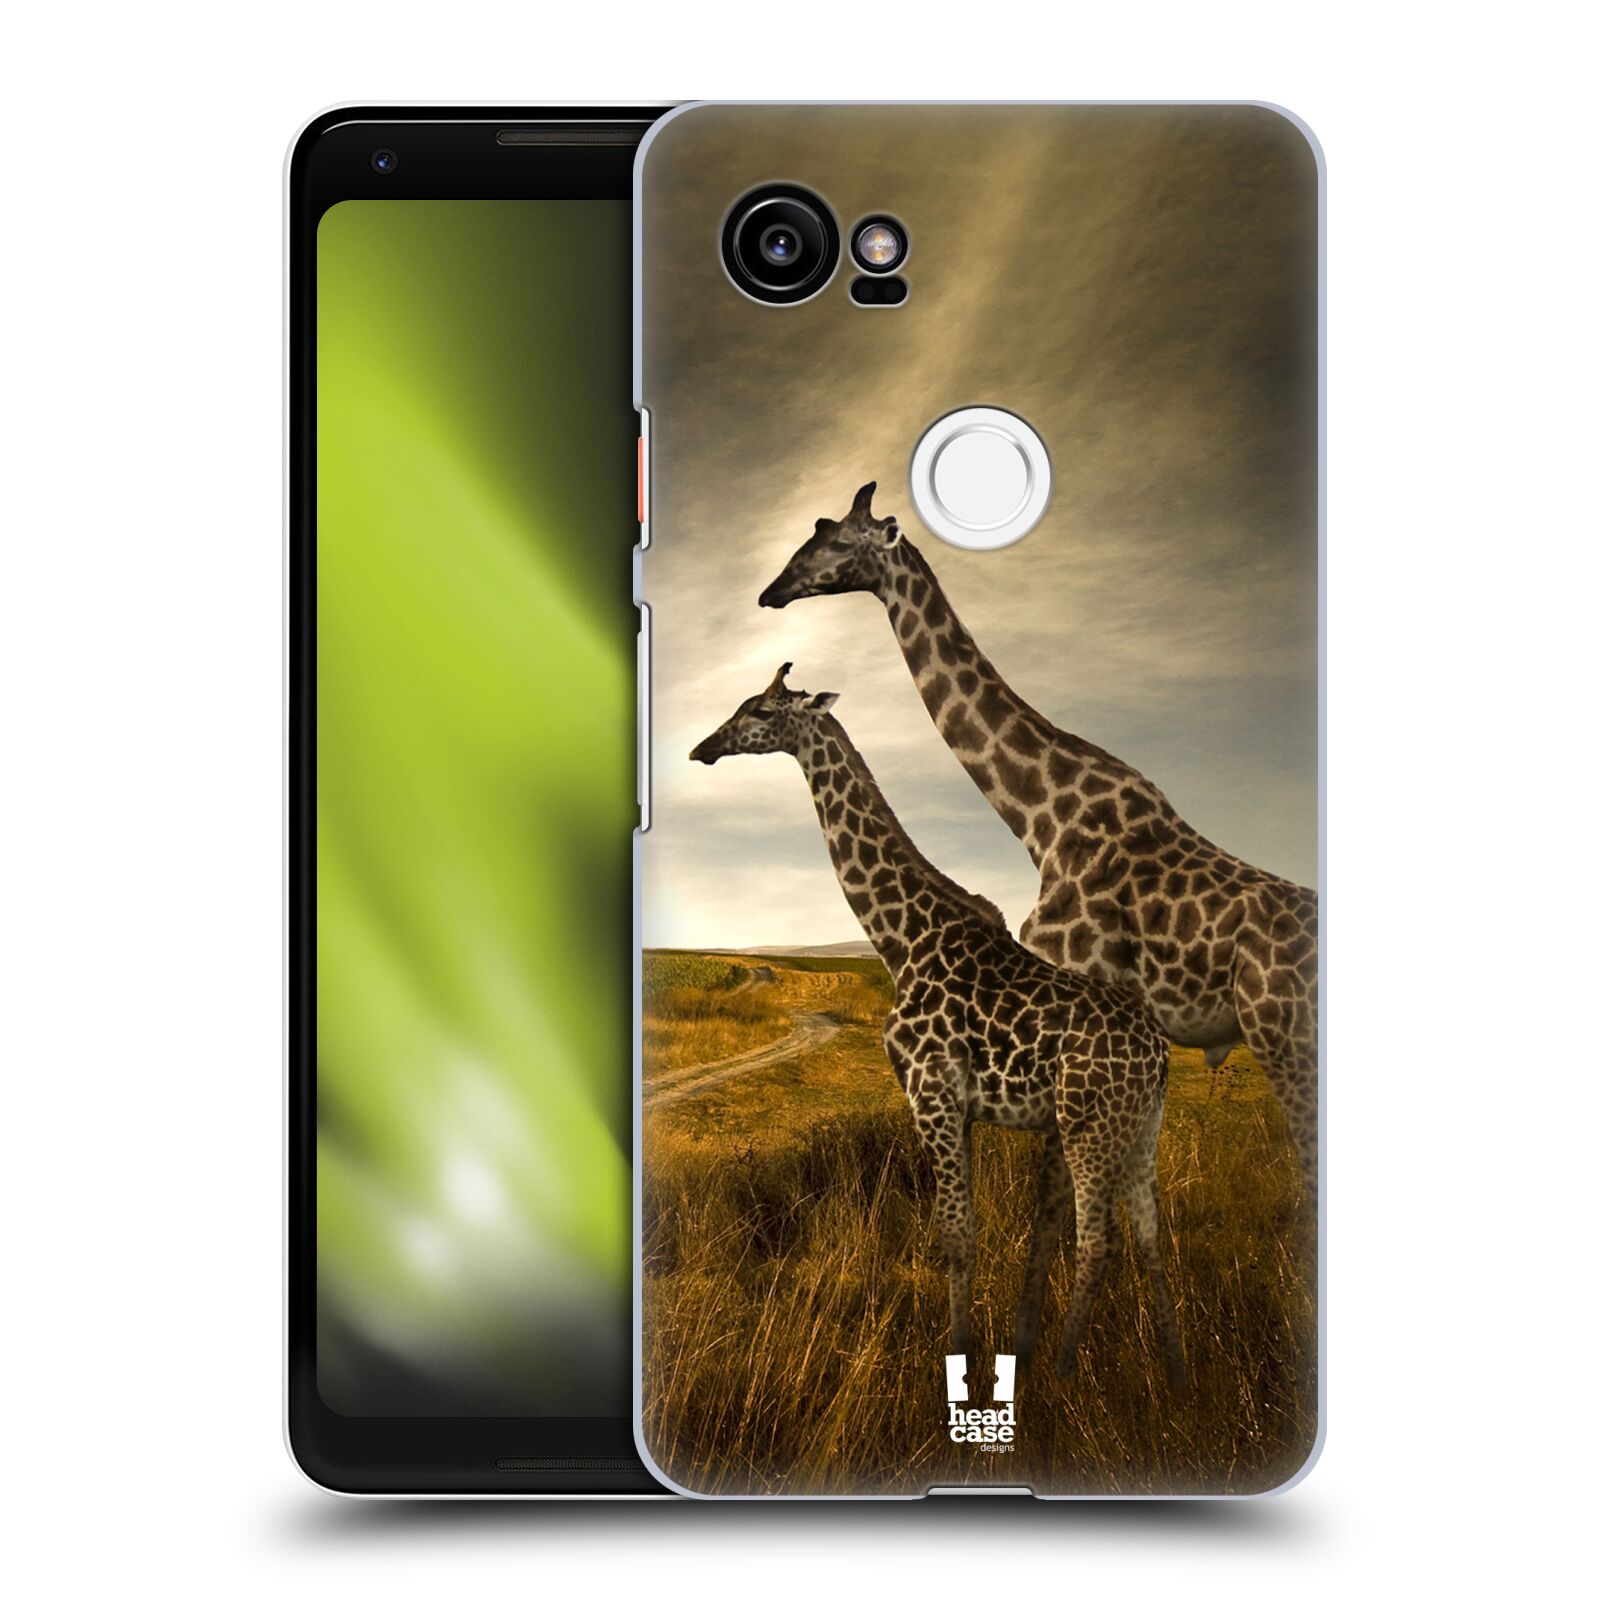 HEAD CASE plastový obal na mobil Google Pixel 2 XL vzor Divočina, Divoký život a zvířata foto AFRIKA ŽIRAFY VÝHLED